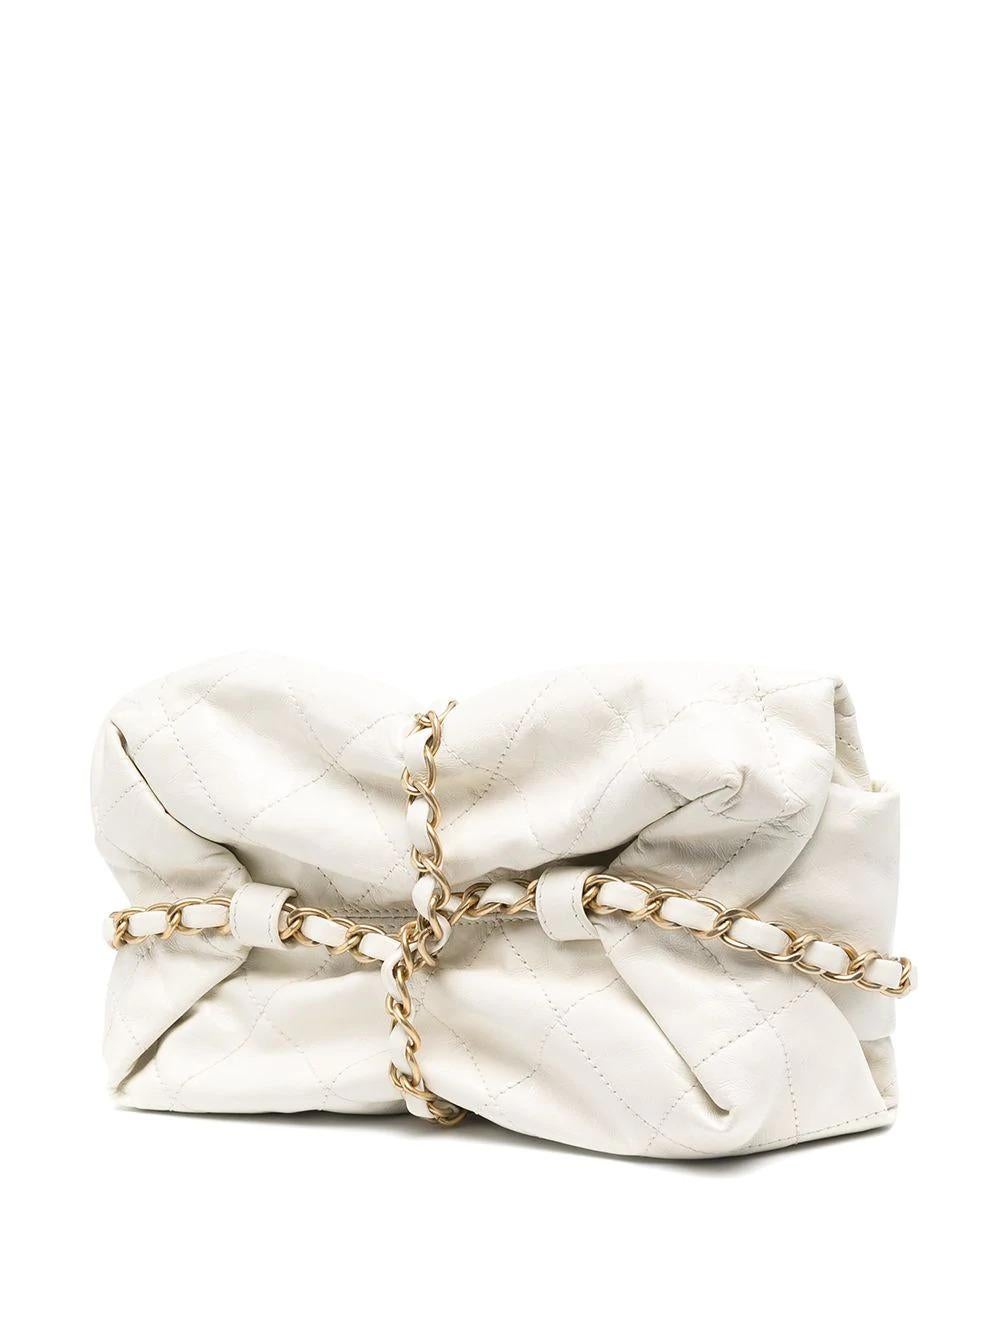 Confectionné en cuir avec une construction en cage et orné d'une breloque logo CC emboîtée, ce sac à colis de Chanel fait partie de la collection Paris-Bombay 2011/12.

Couleur : blanc et matériel doré

Composition : 100% cuir
Numéro de série :